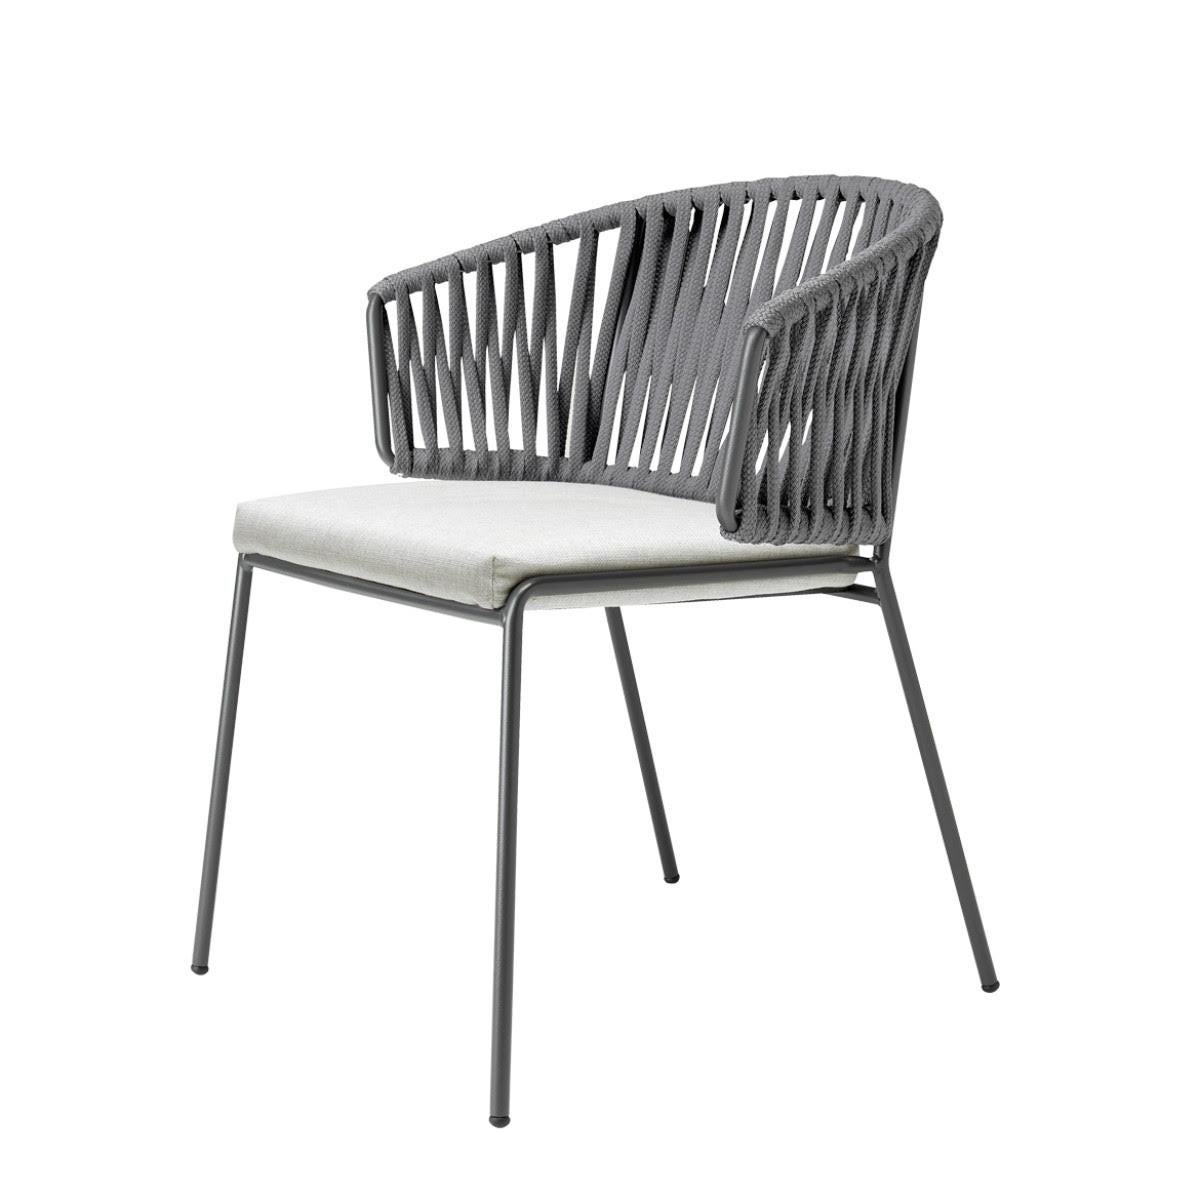 Paire de fauteuils gris en métal et cordes pour l'extérieur ou l'intérieur, 21e siècle
Fauteuil de production moderne pour l'extérieur ou l'intérieur. La structure est en métal et renforcée par les cordes à l'arrière. Ce fauteuil présente un design